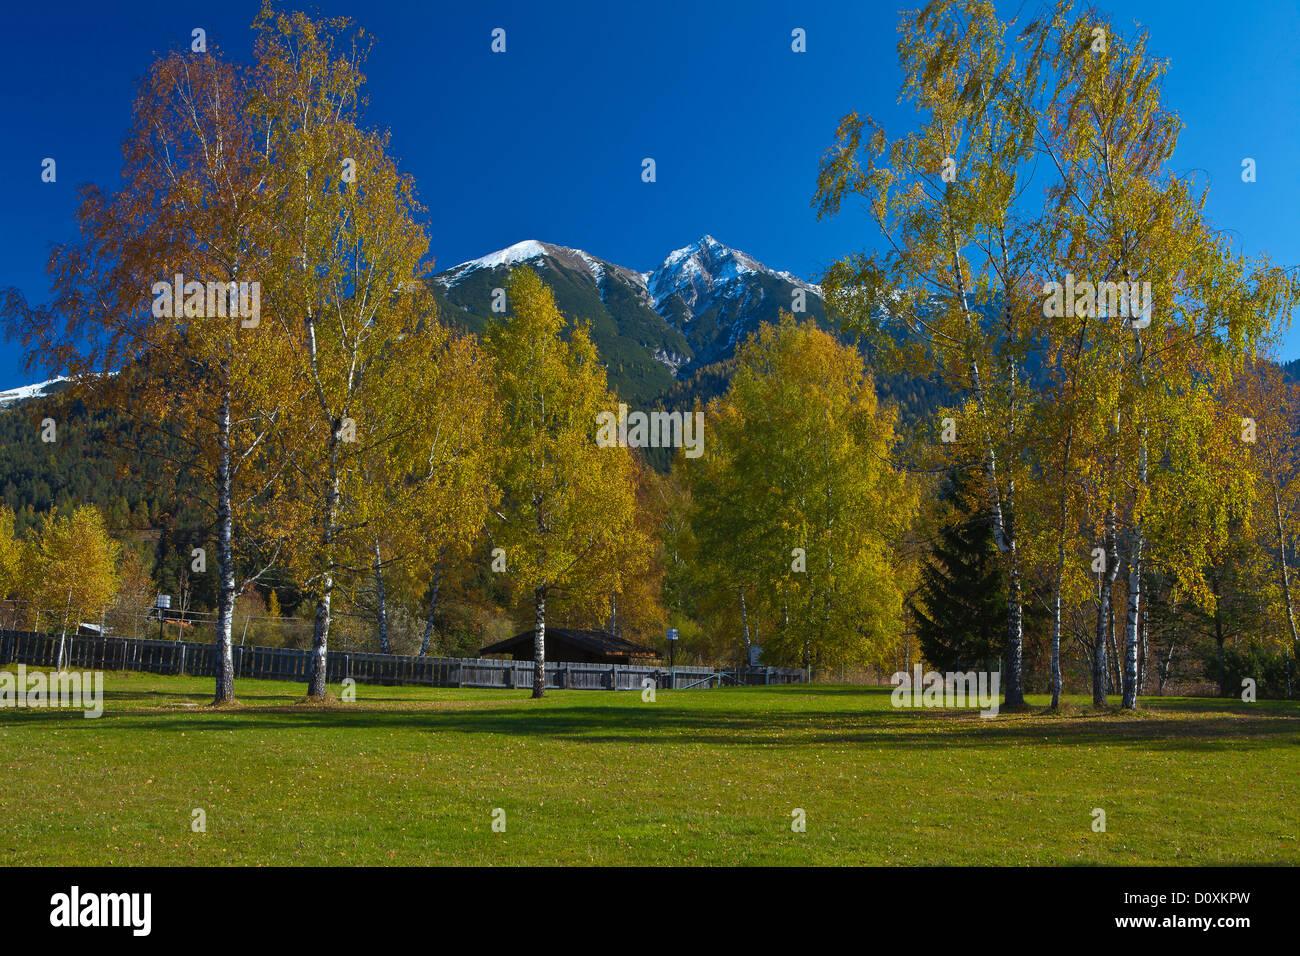 Austria, Europe, Tyrol, Tirol, Seefeld, meadow, birches, trees, Yellow, autumn, blue, green, snow, mountain, Reither Spitzer, Re Stock Photo